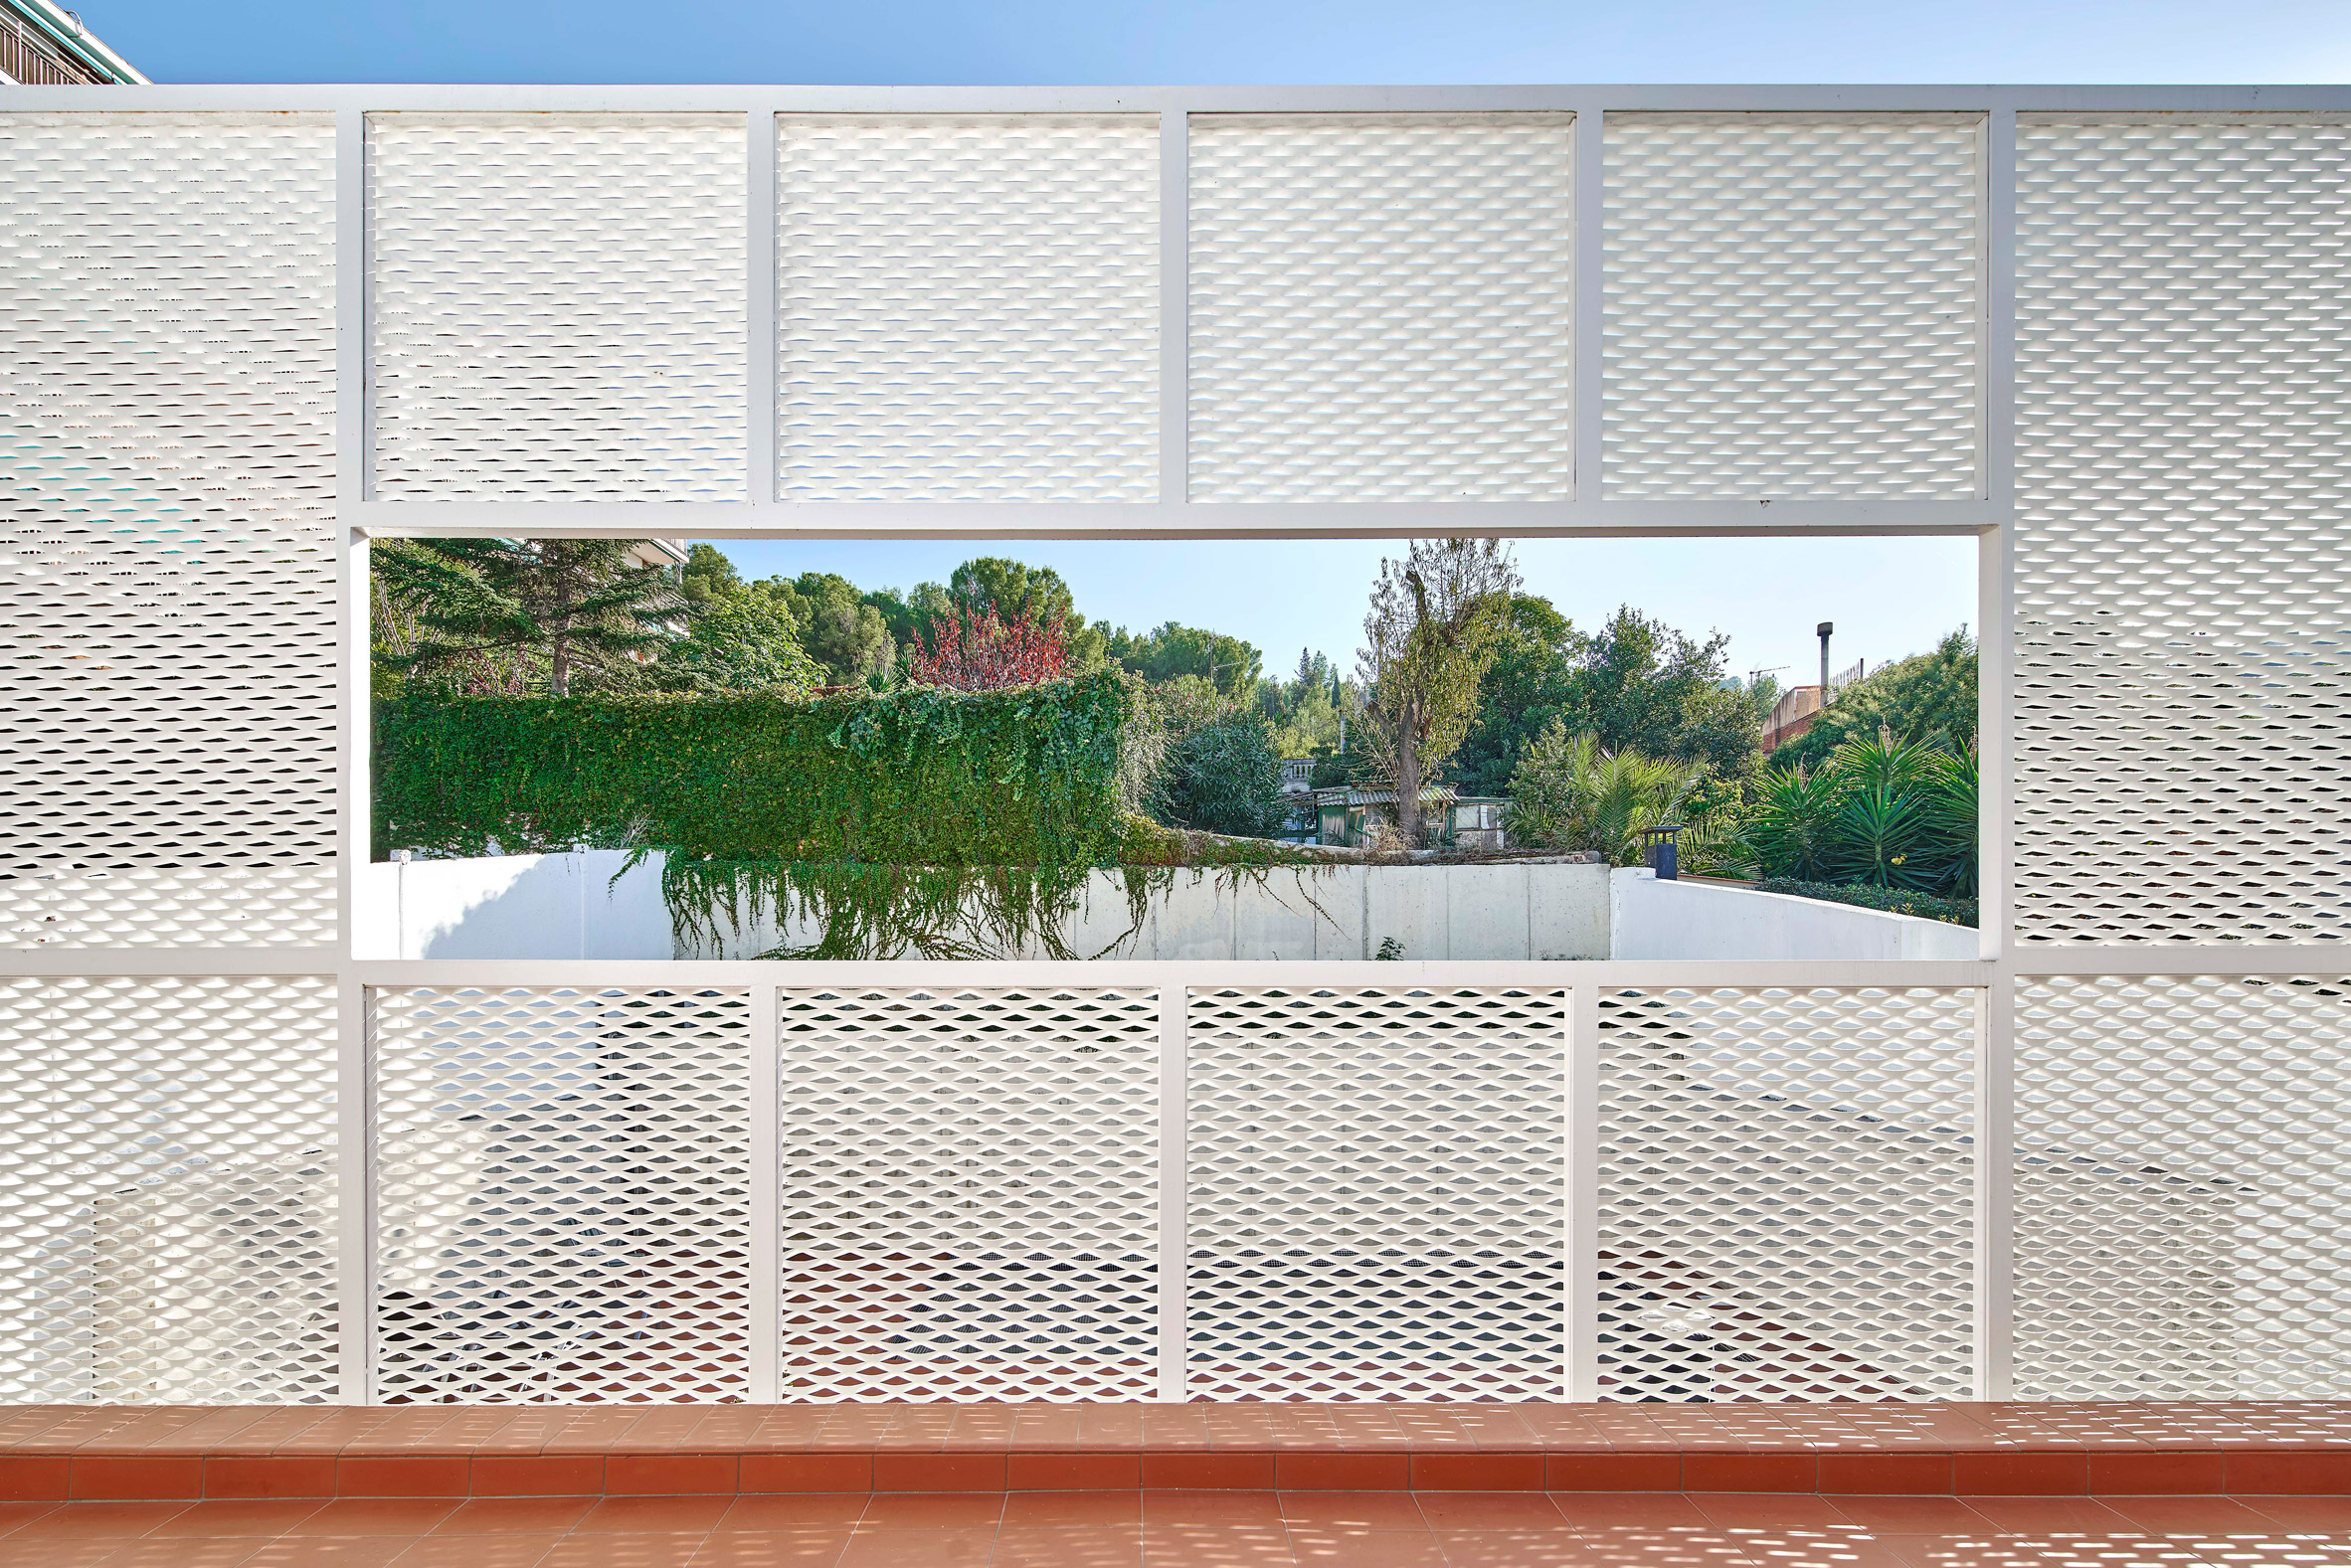 Bonba Studio encases extension in Barcelona in white metal mesh